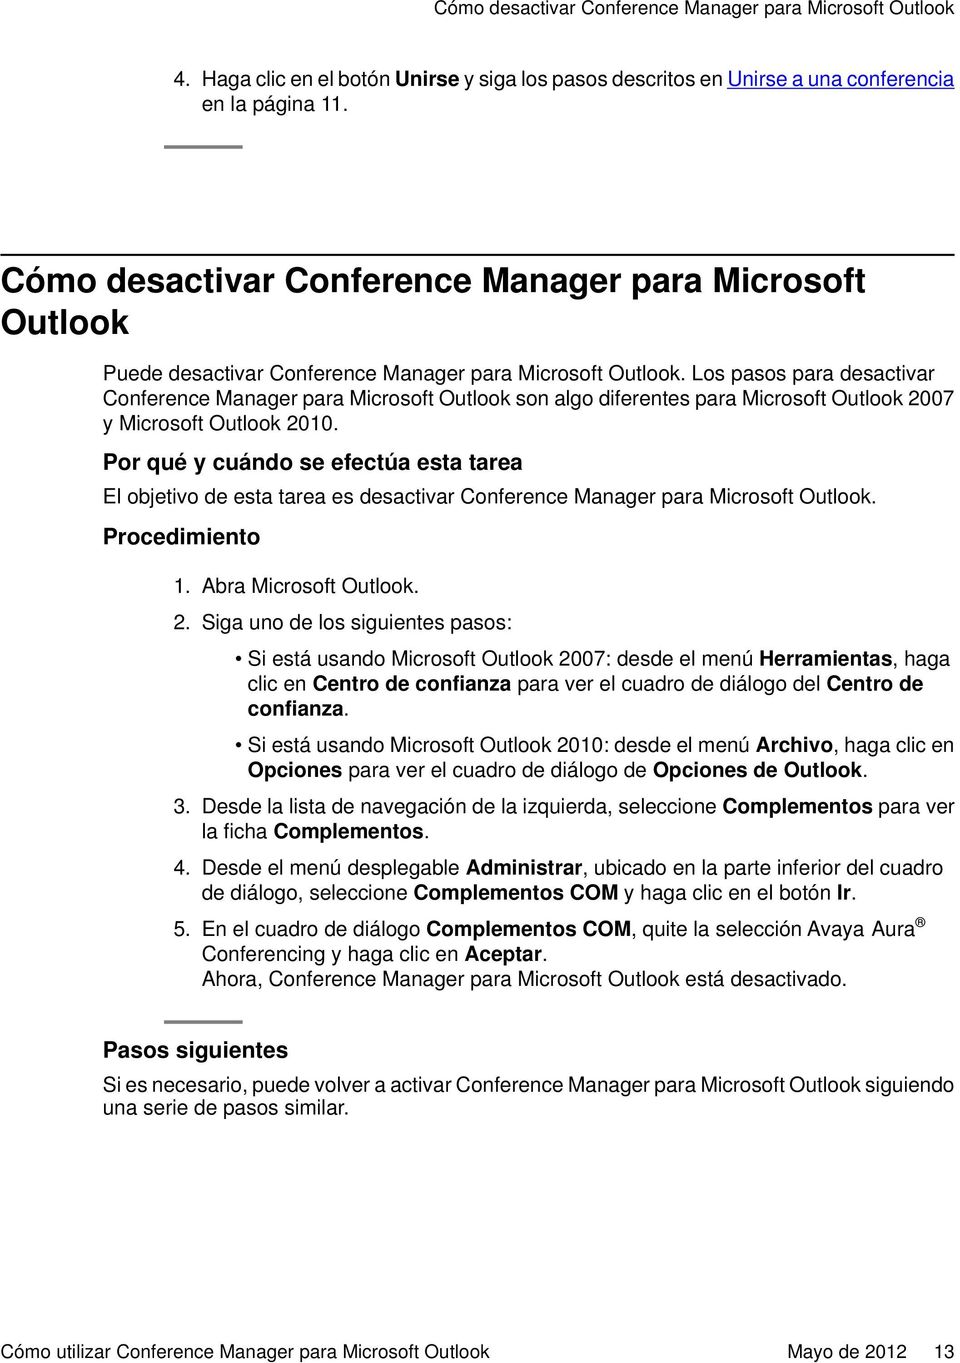 Los pasos para desactivar Conference Manager para Microsoft Outlook son algo diferentes para Microsoft Outlook 2007 y Microsoft Outlook 2010.